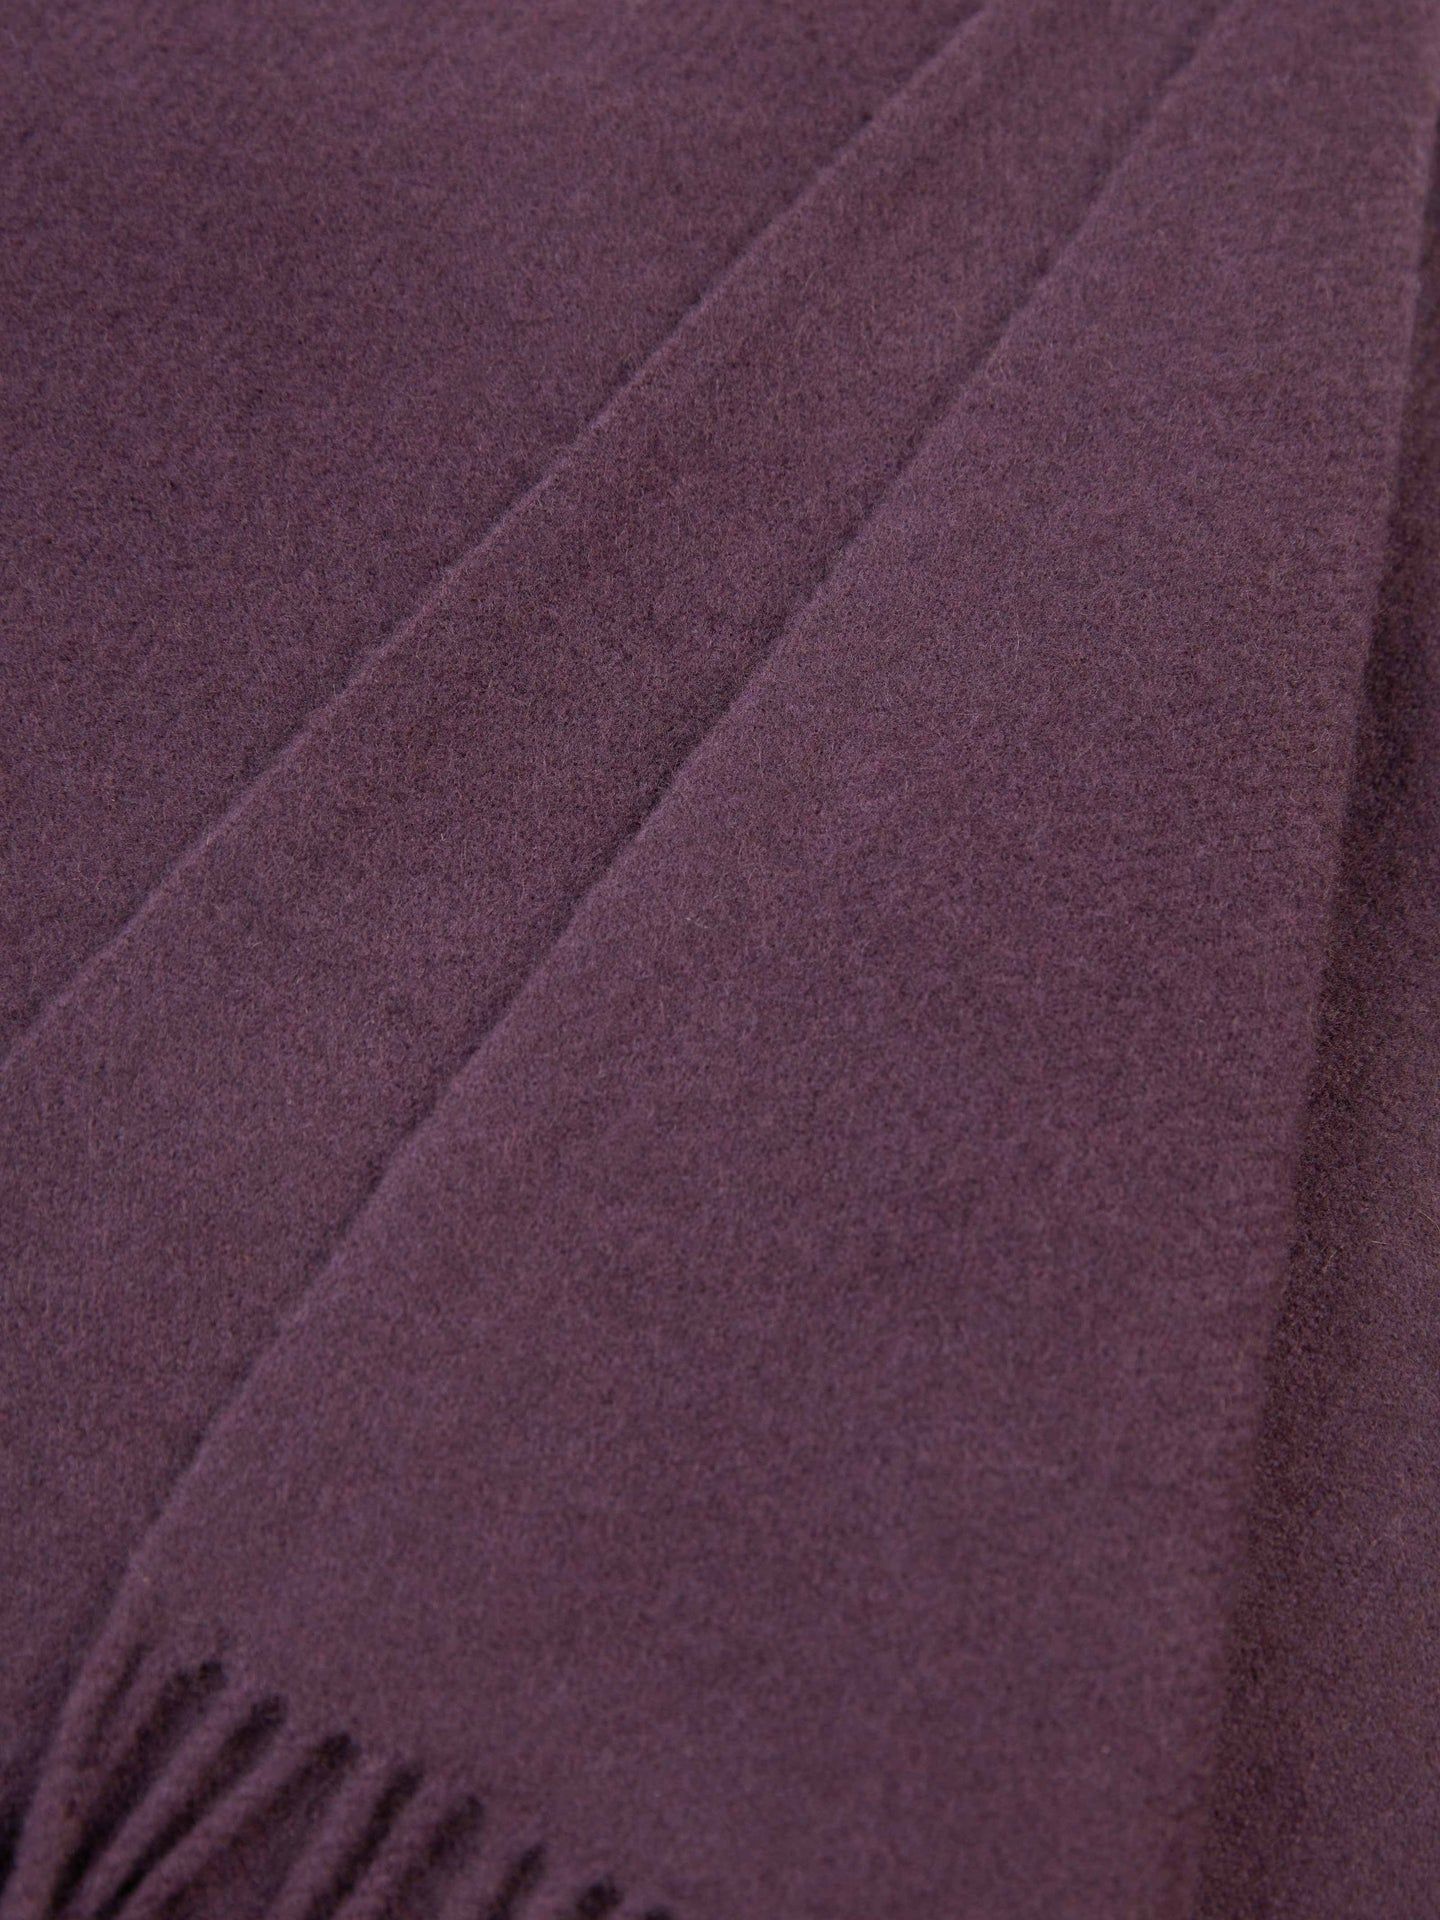 Couverture moyenne avec frange en cachemire Prune noire - Gobi Cashmere